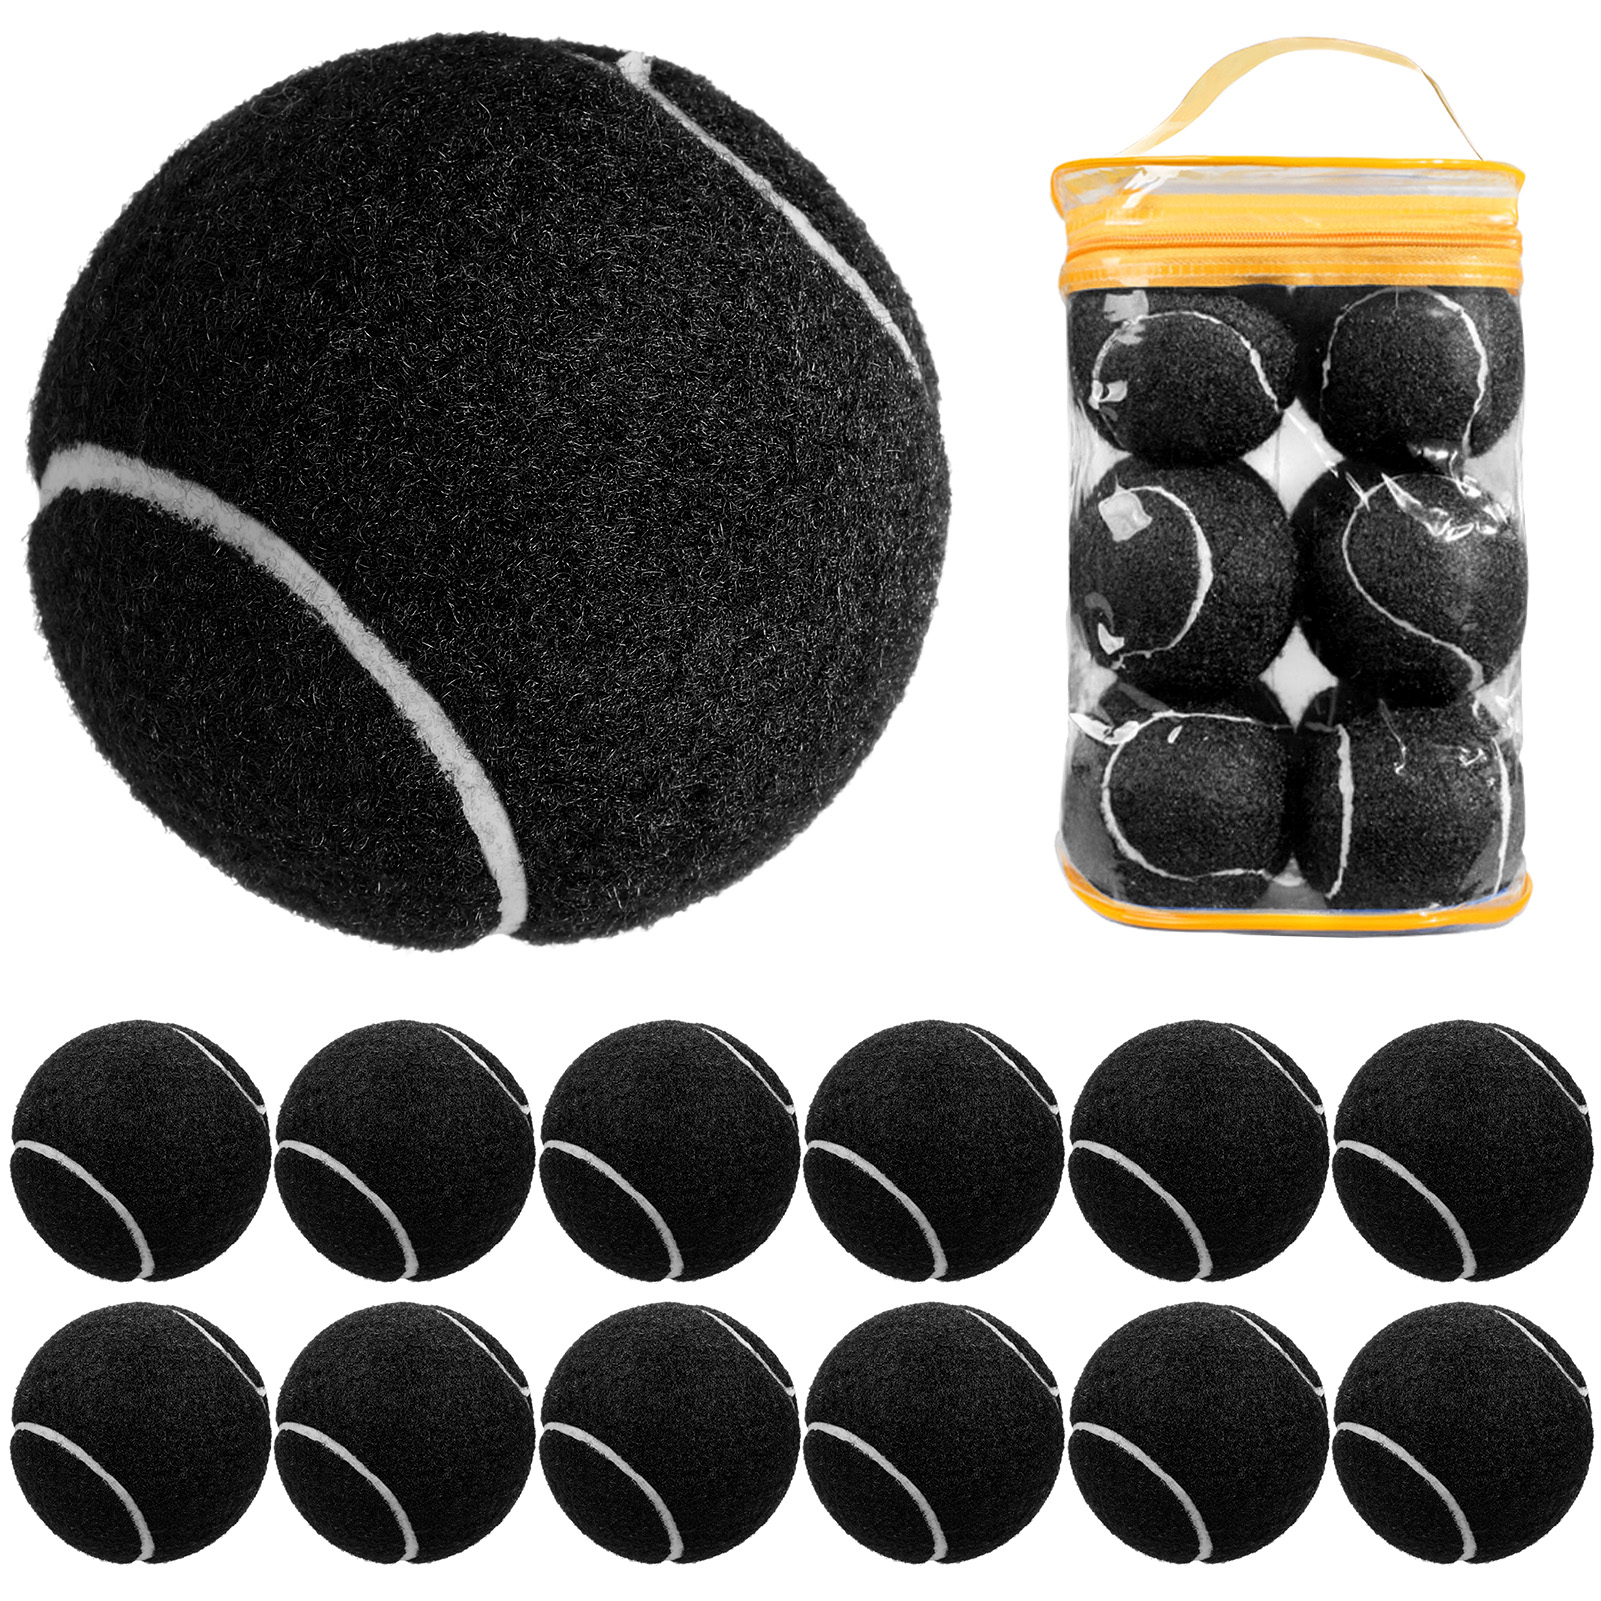 12 Packs Pressure Matching and Training Tennis Balls